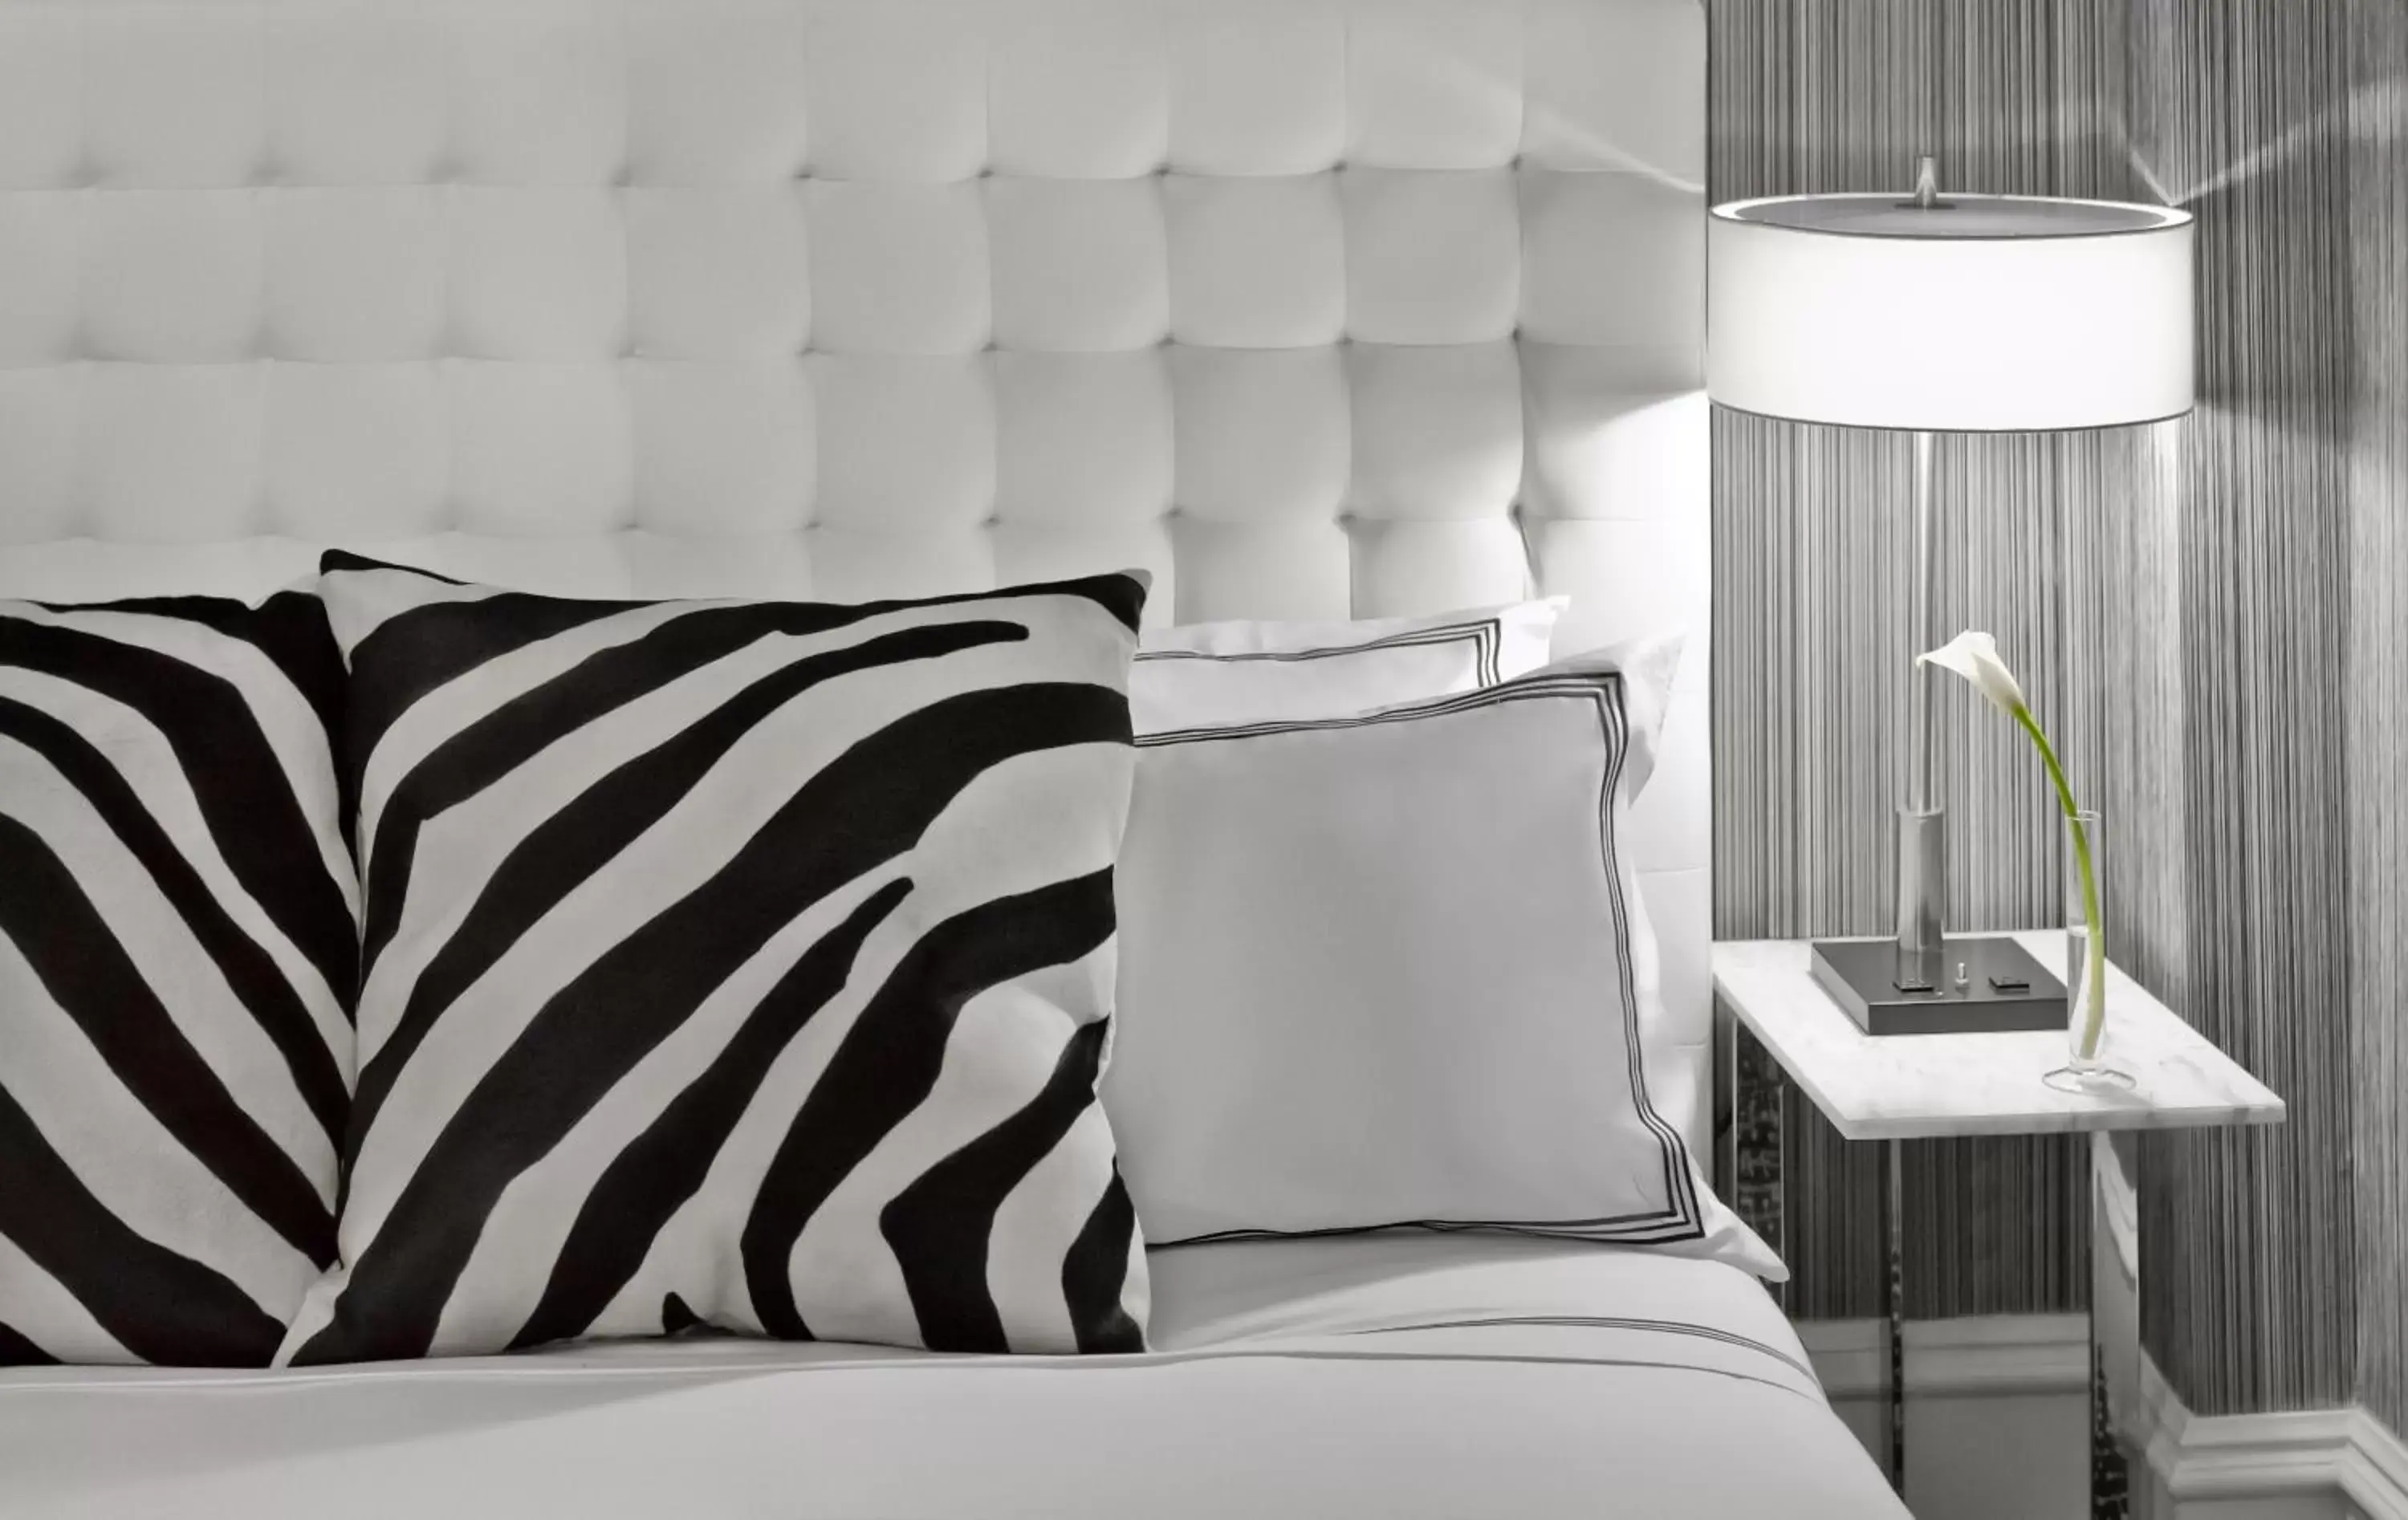 Bed in Moderne Hotel